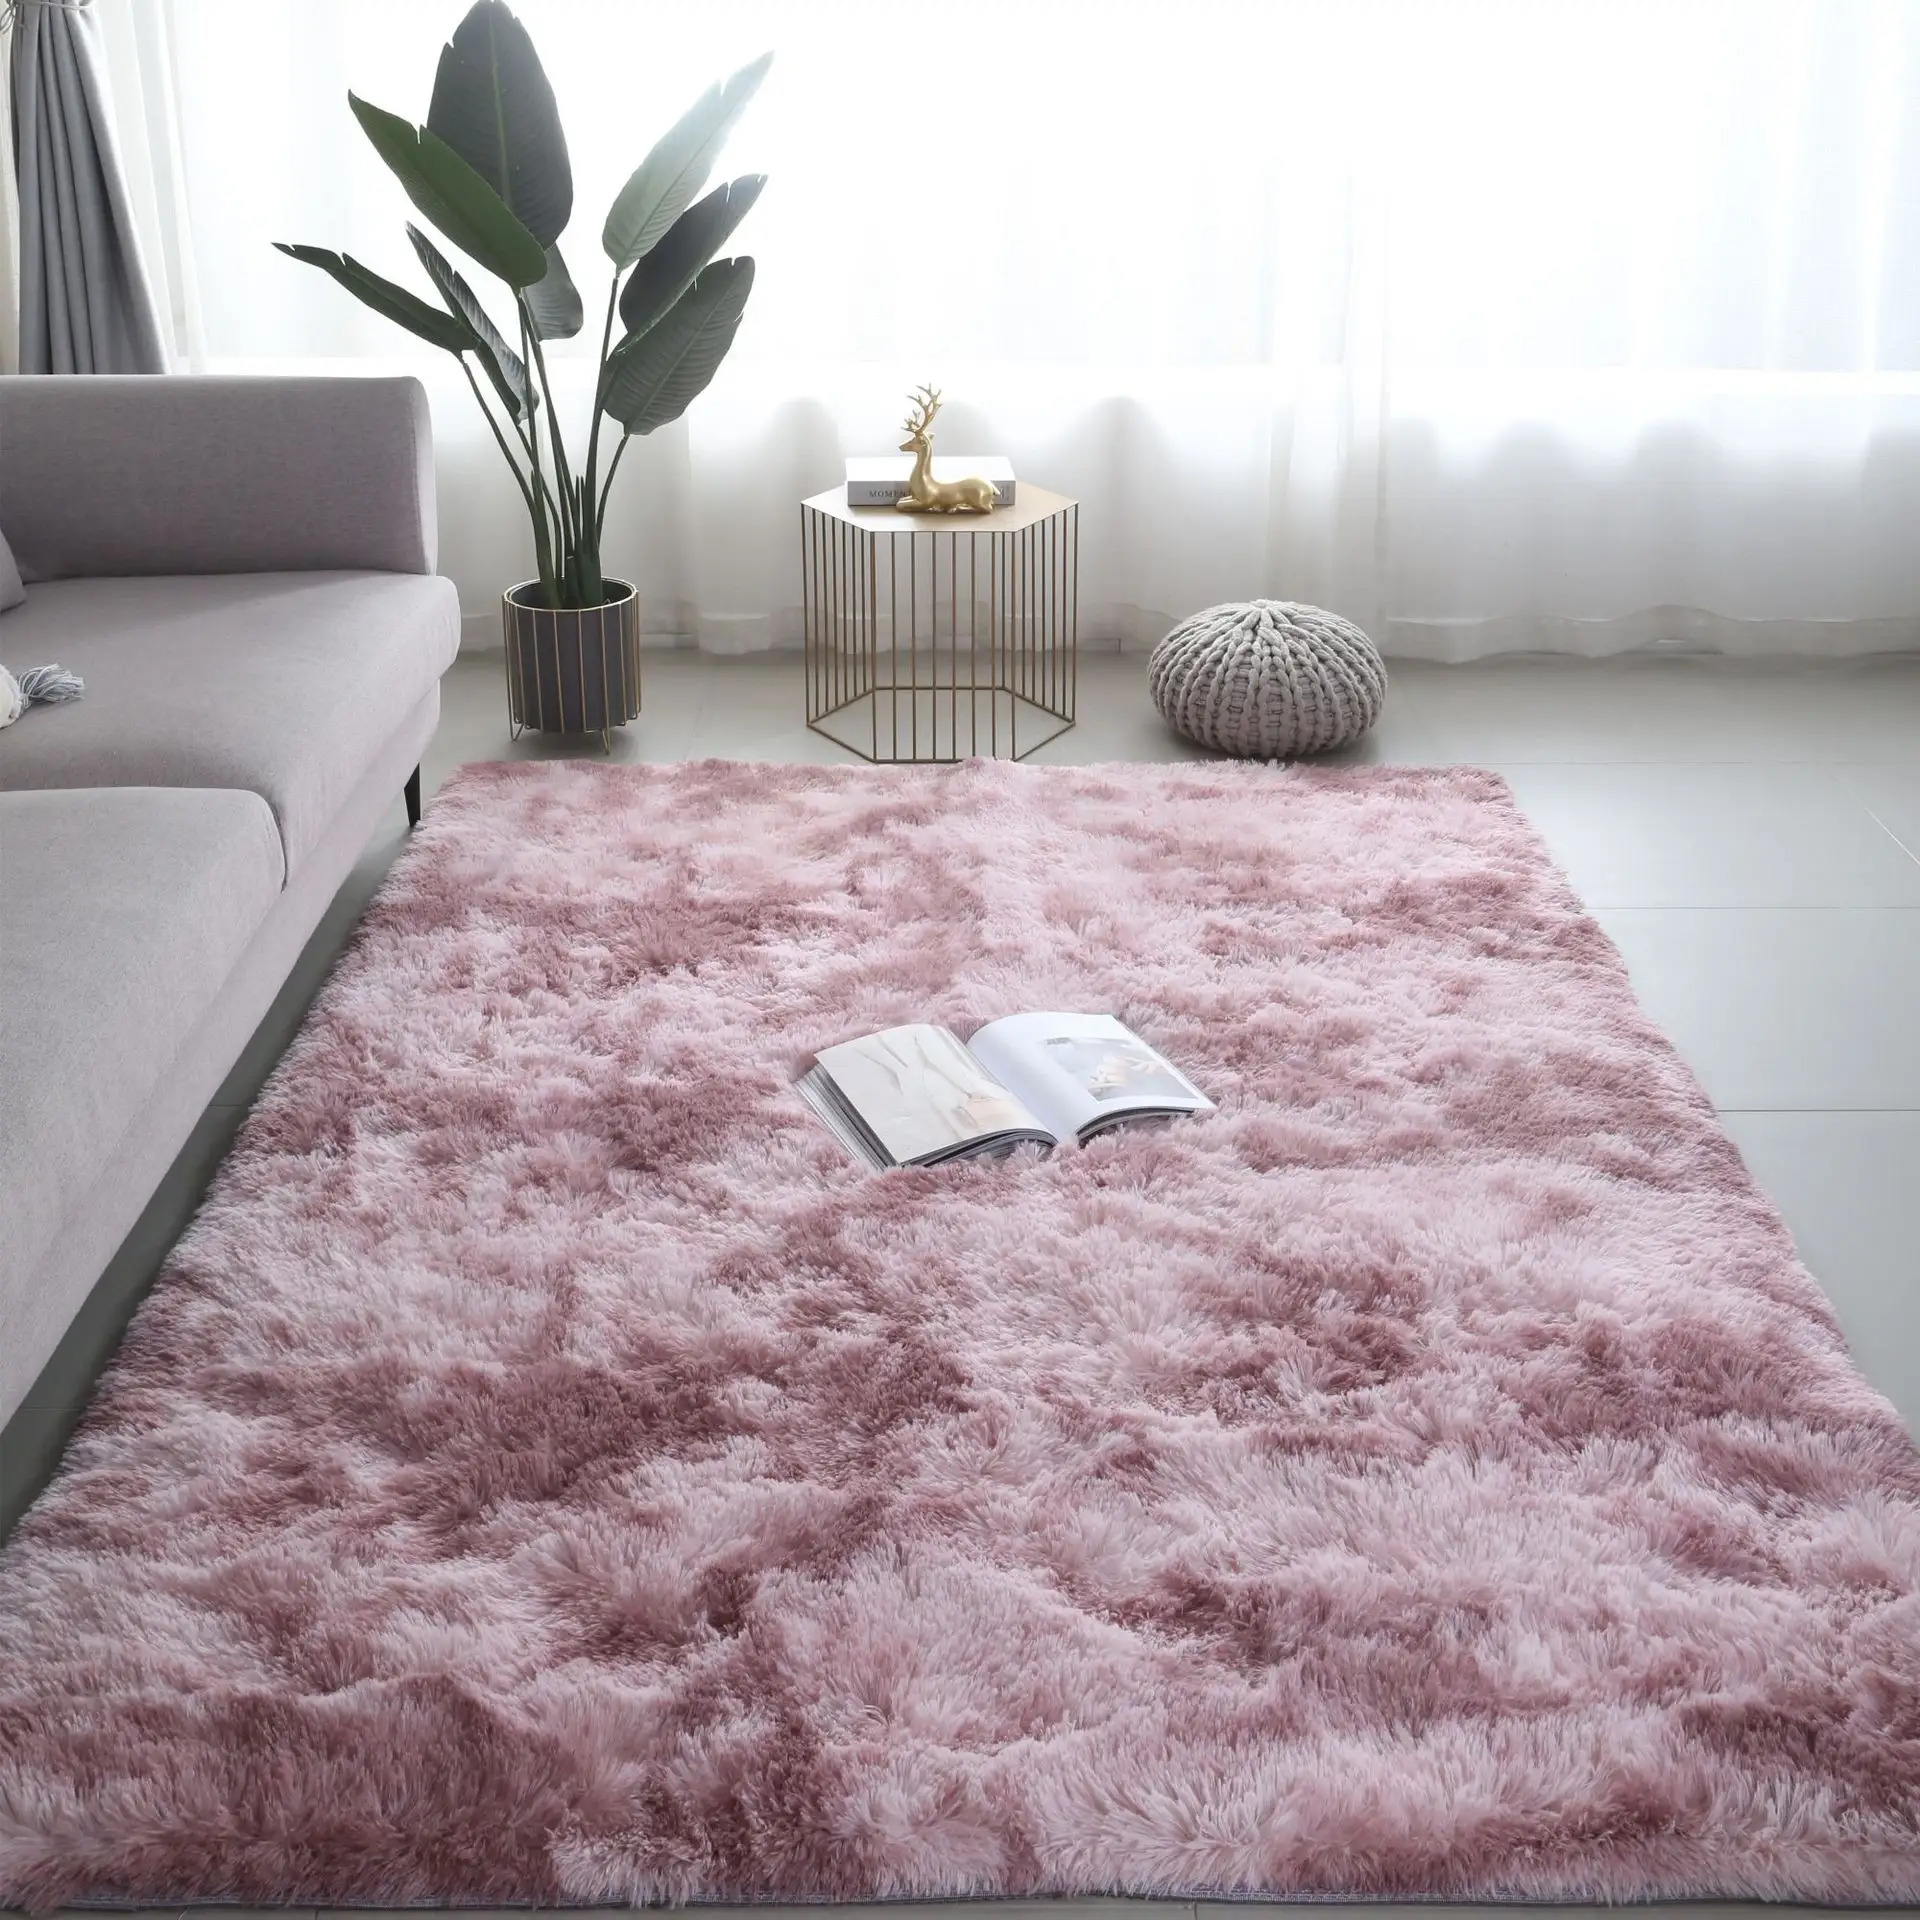 Alfombras de área de 8x10 para interior, Color rosa, moderno, Simple, conejo, Bahía de pelo, ventana, cama, alfombra gruesa para sala de estar